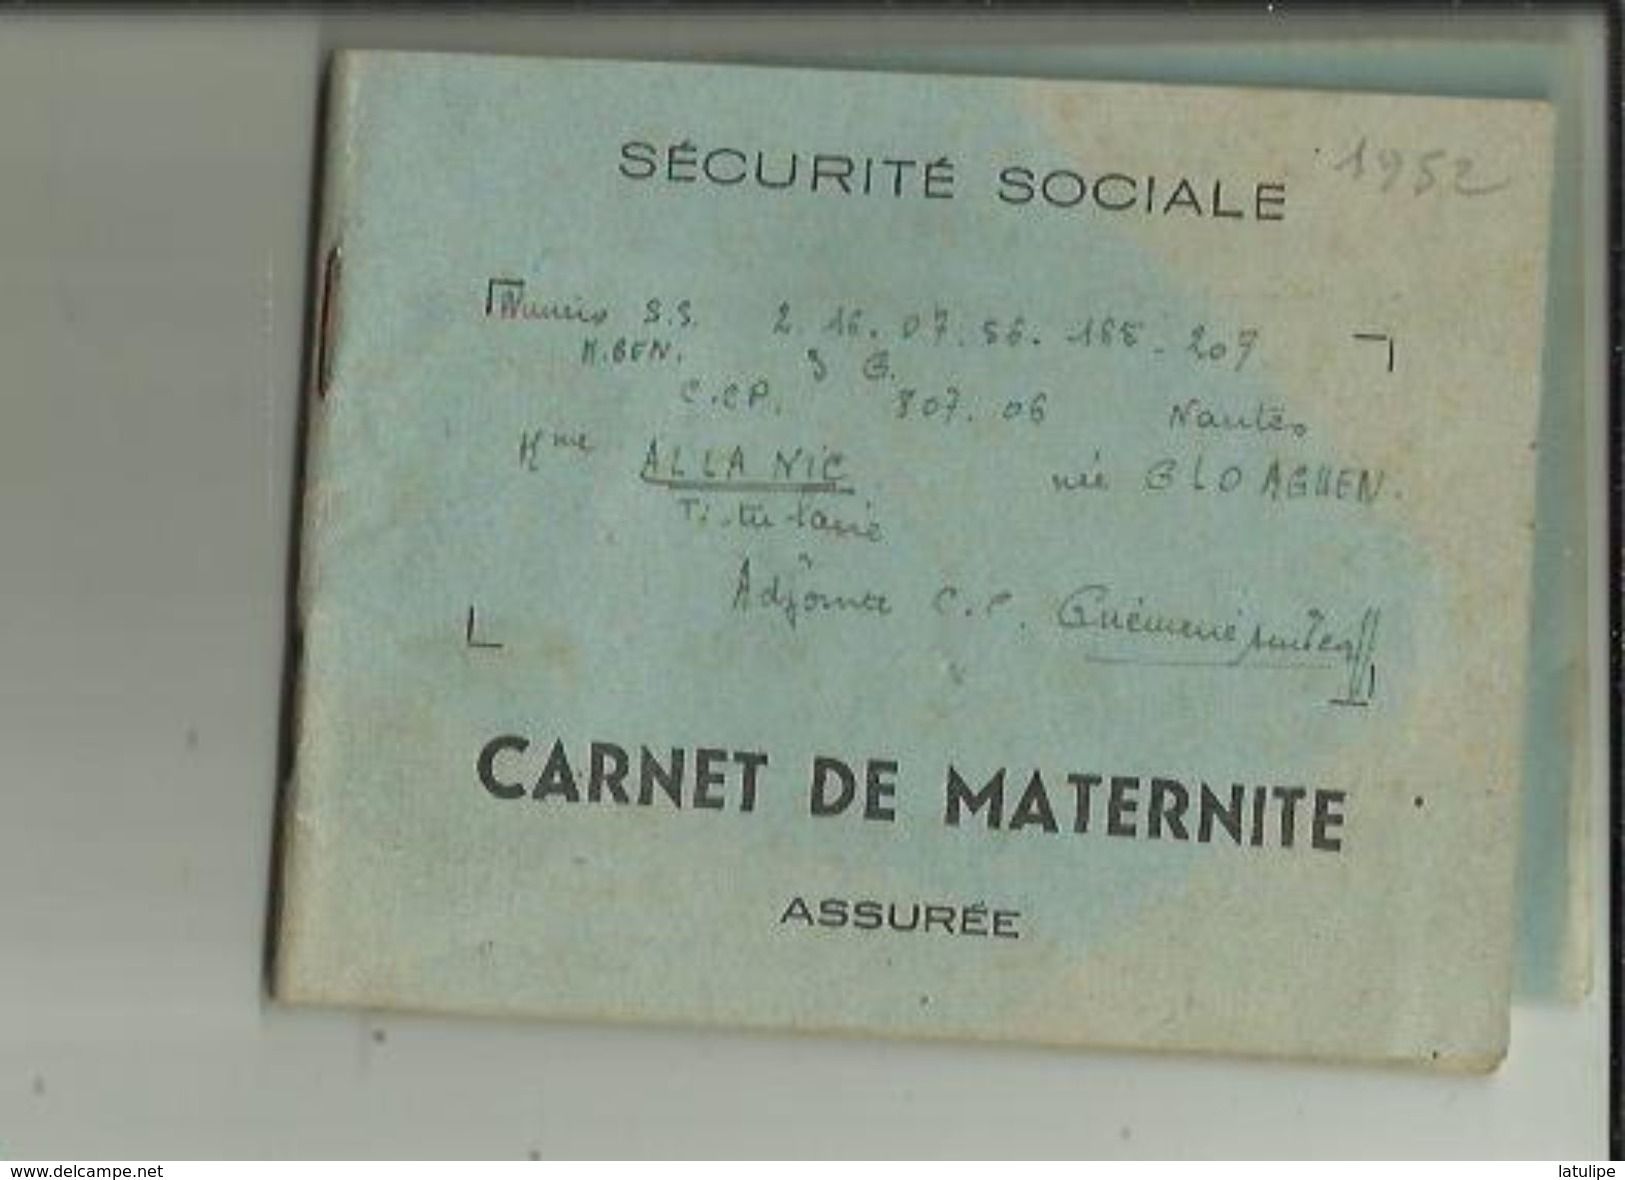 Carnet De Maternité De S S -(Assurée)  De Mme ALLANIC  Née GLOAGUEN _Institutrice Adjointe A GUEMENE Dur SCORFF En 1952 - Matériel Médical & Dentaire